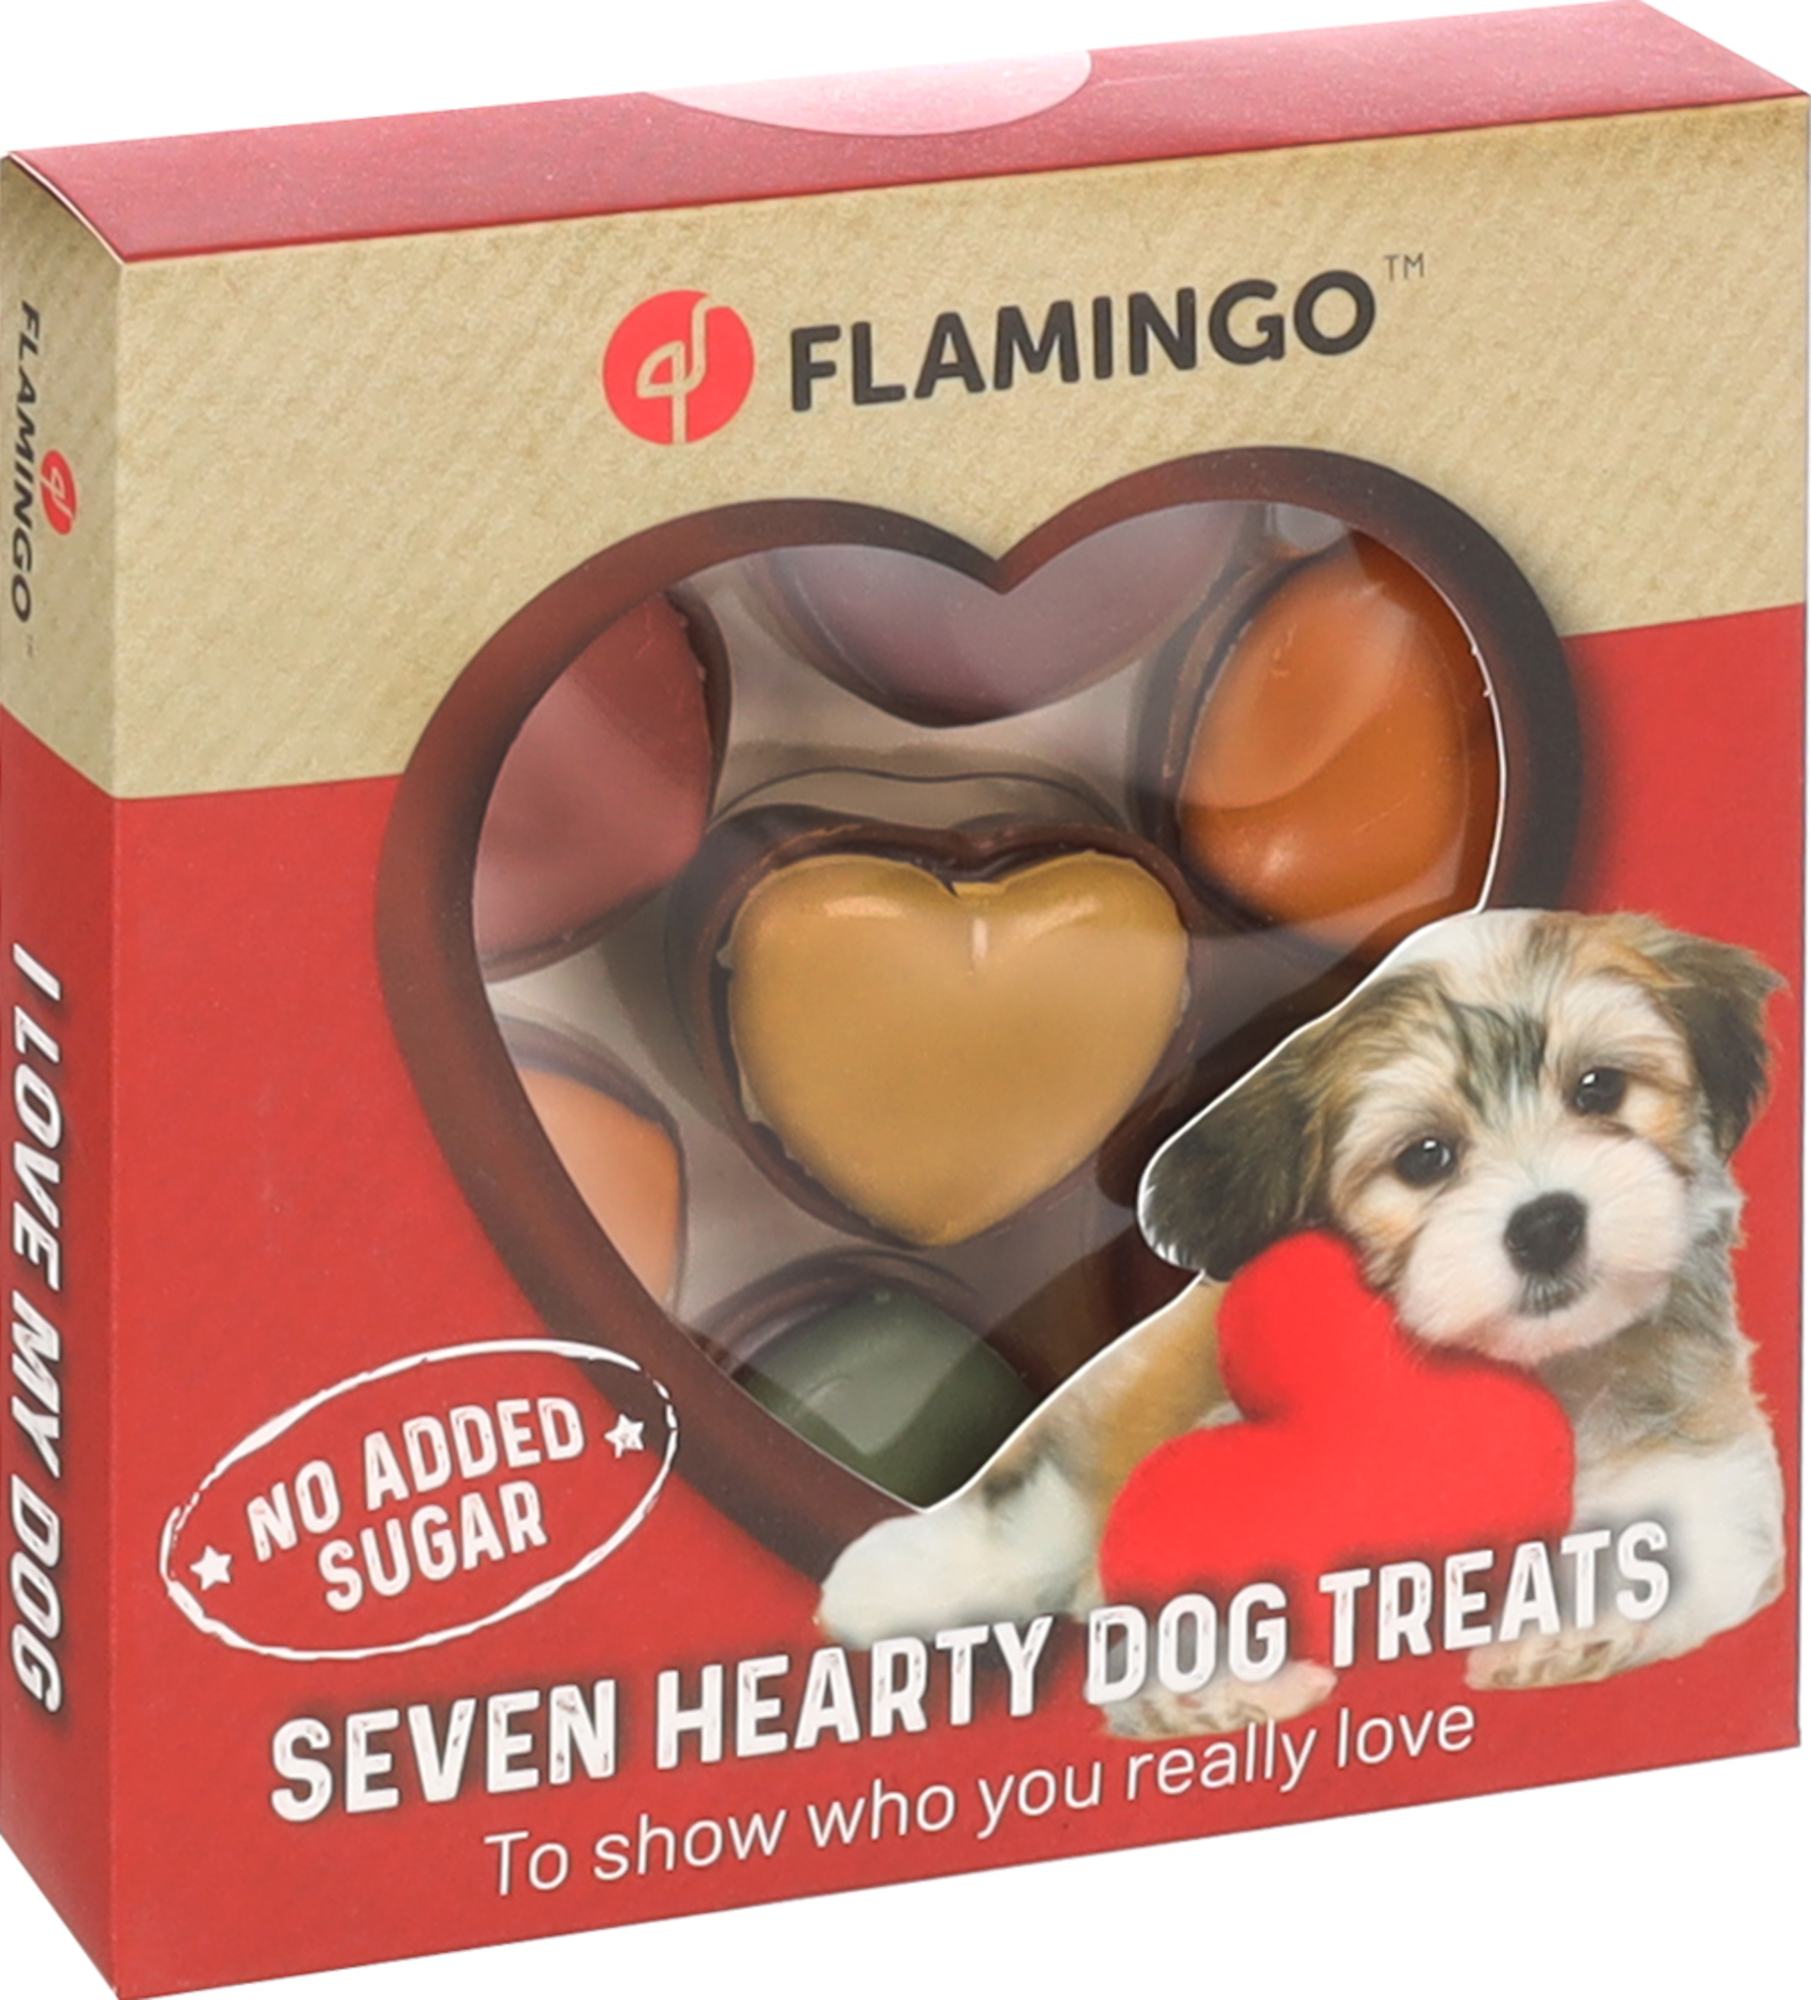 Guloseimas macaron em forma de coração para cão